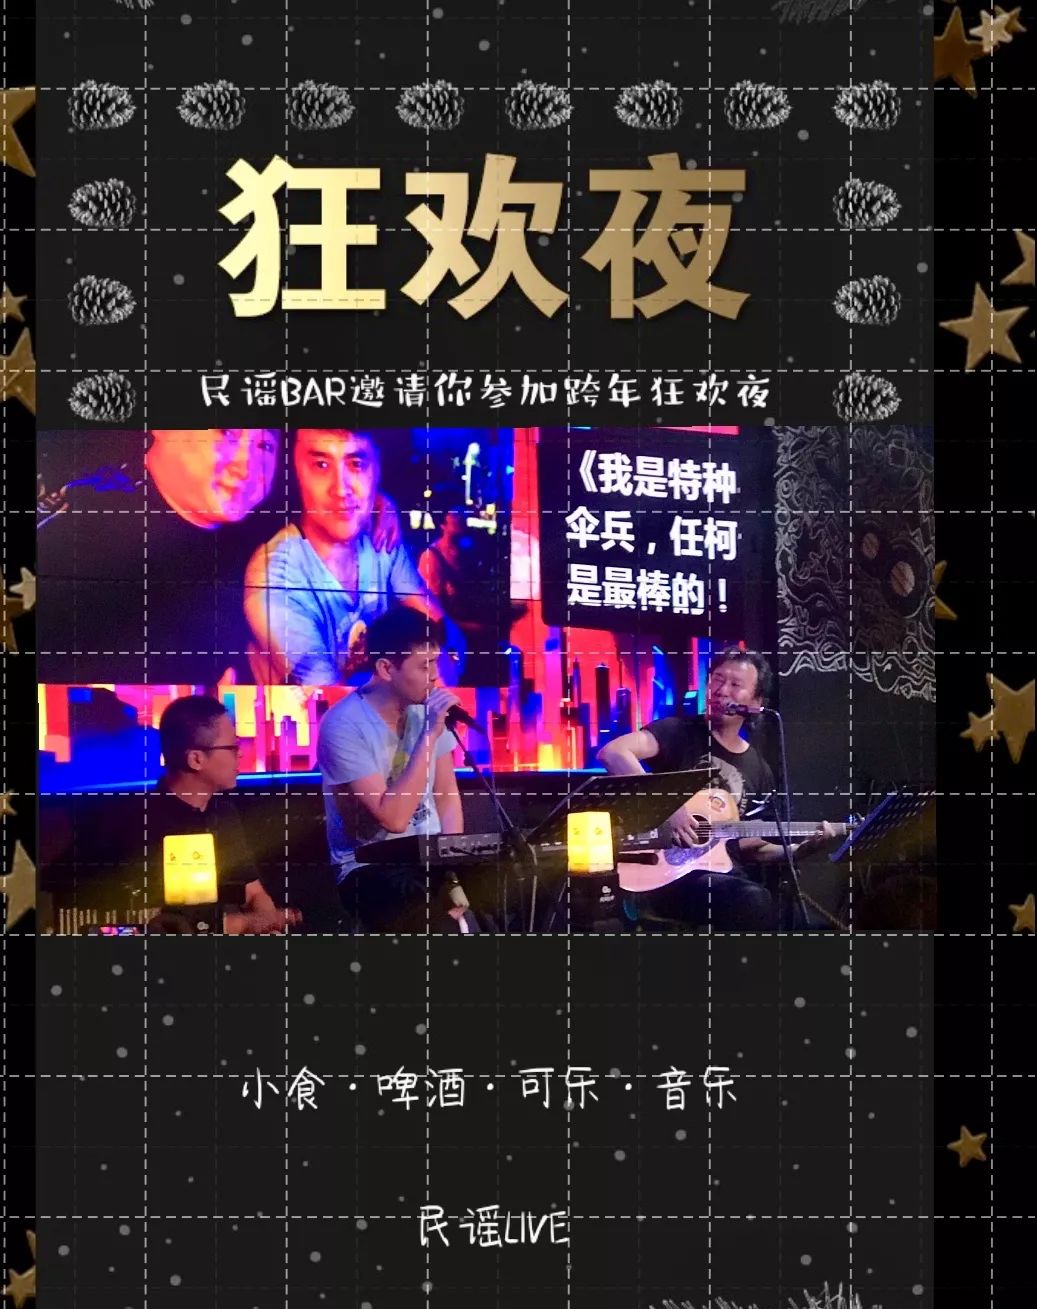  2019珠海民谣在路上主题音乐酒吧元旦活动